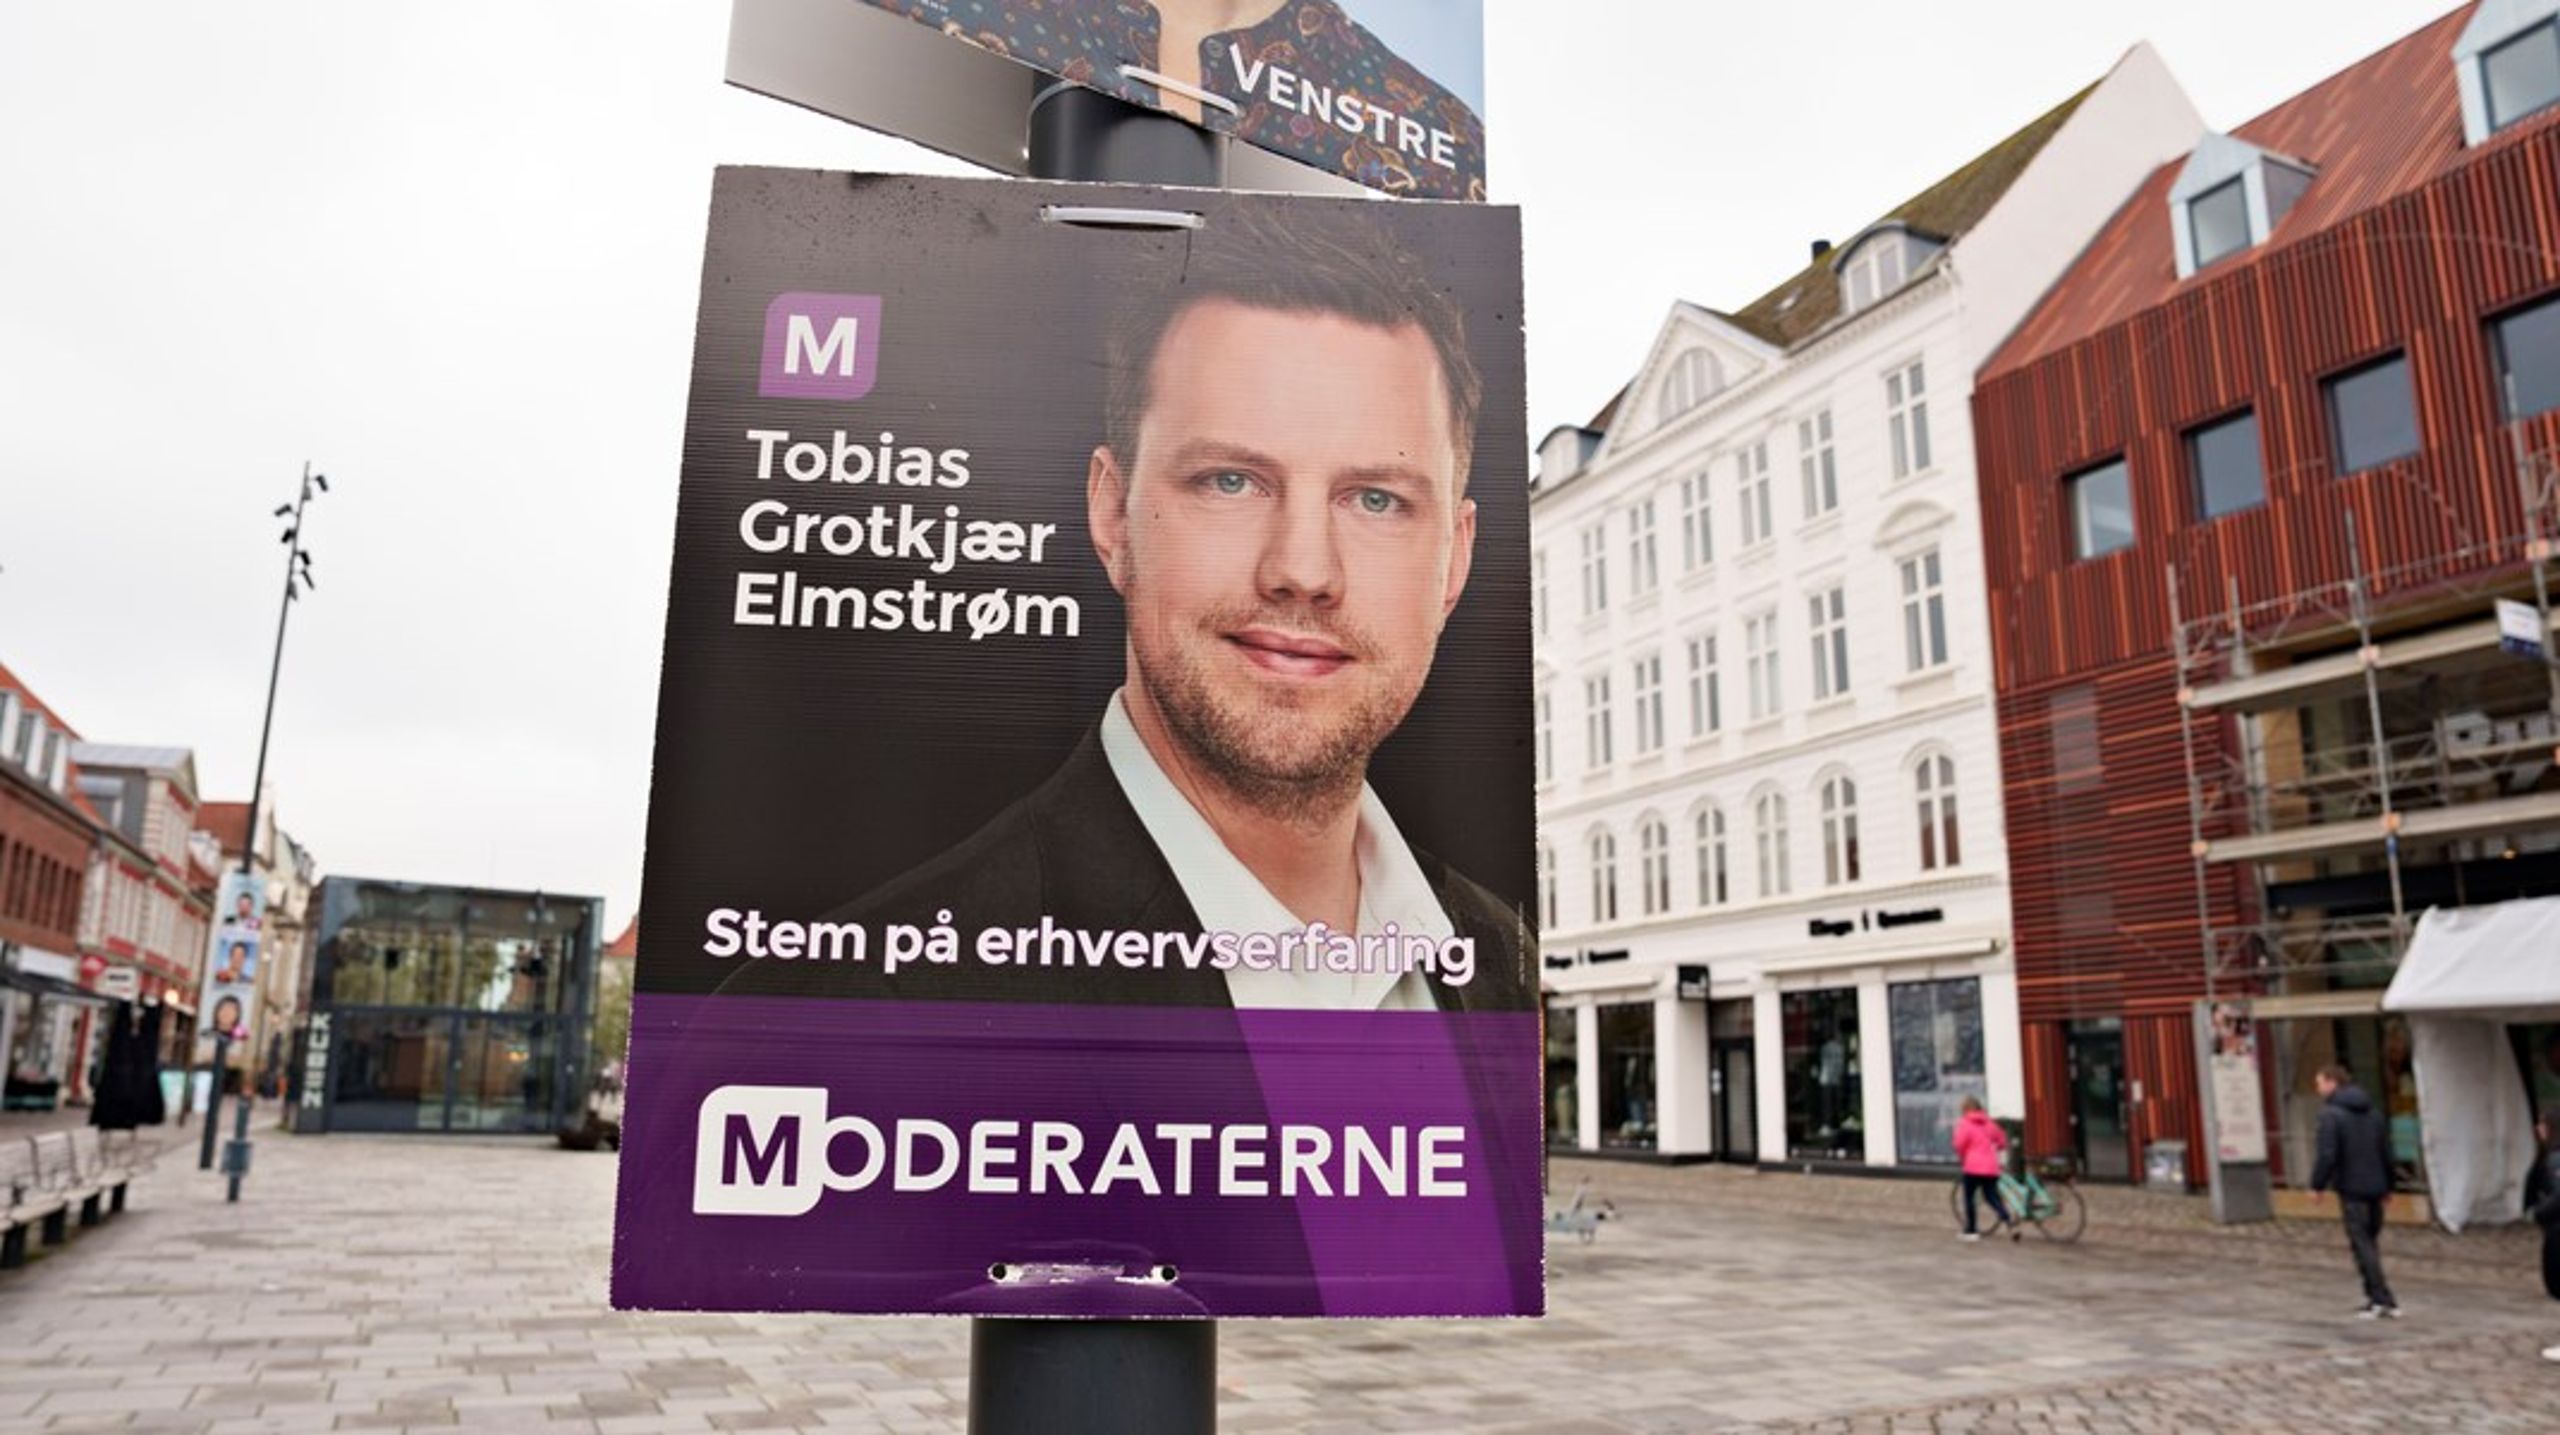 Moderaternes Rasmus Grotkjær Elmstrøm er tilbage i Folketinget efter endt barselsorlov.&nbsp;